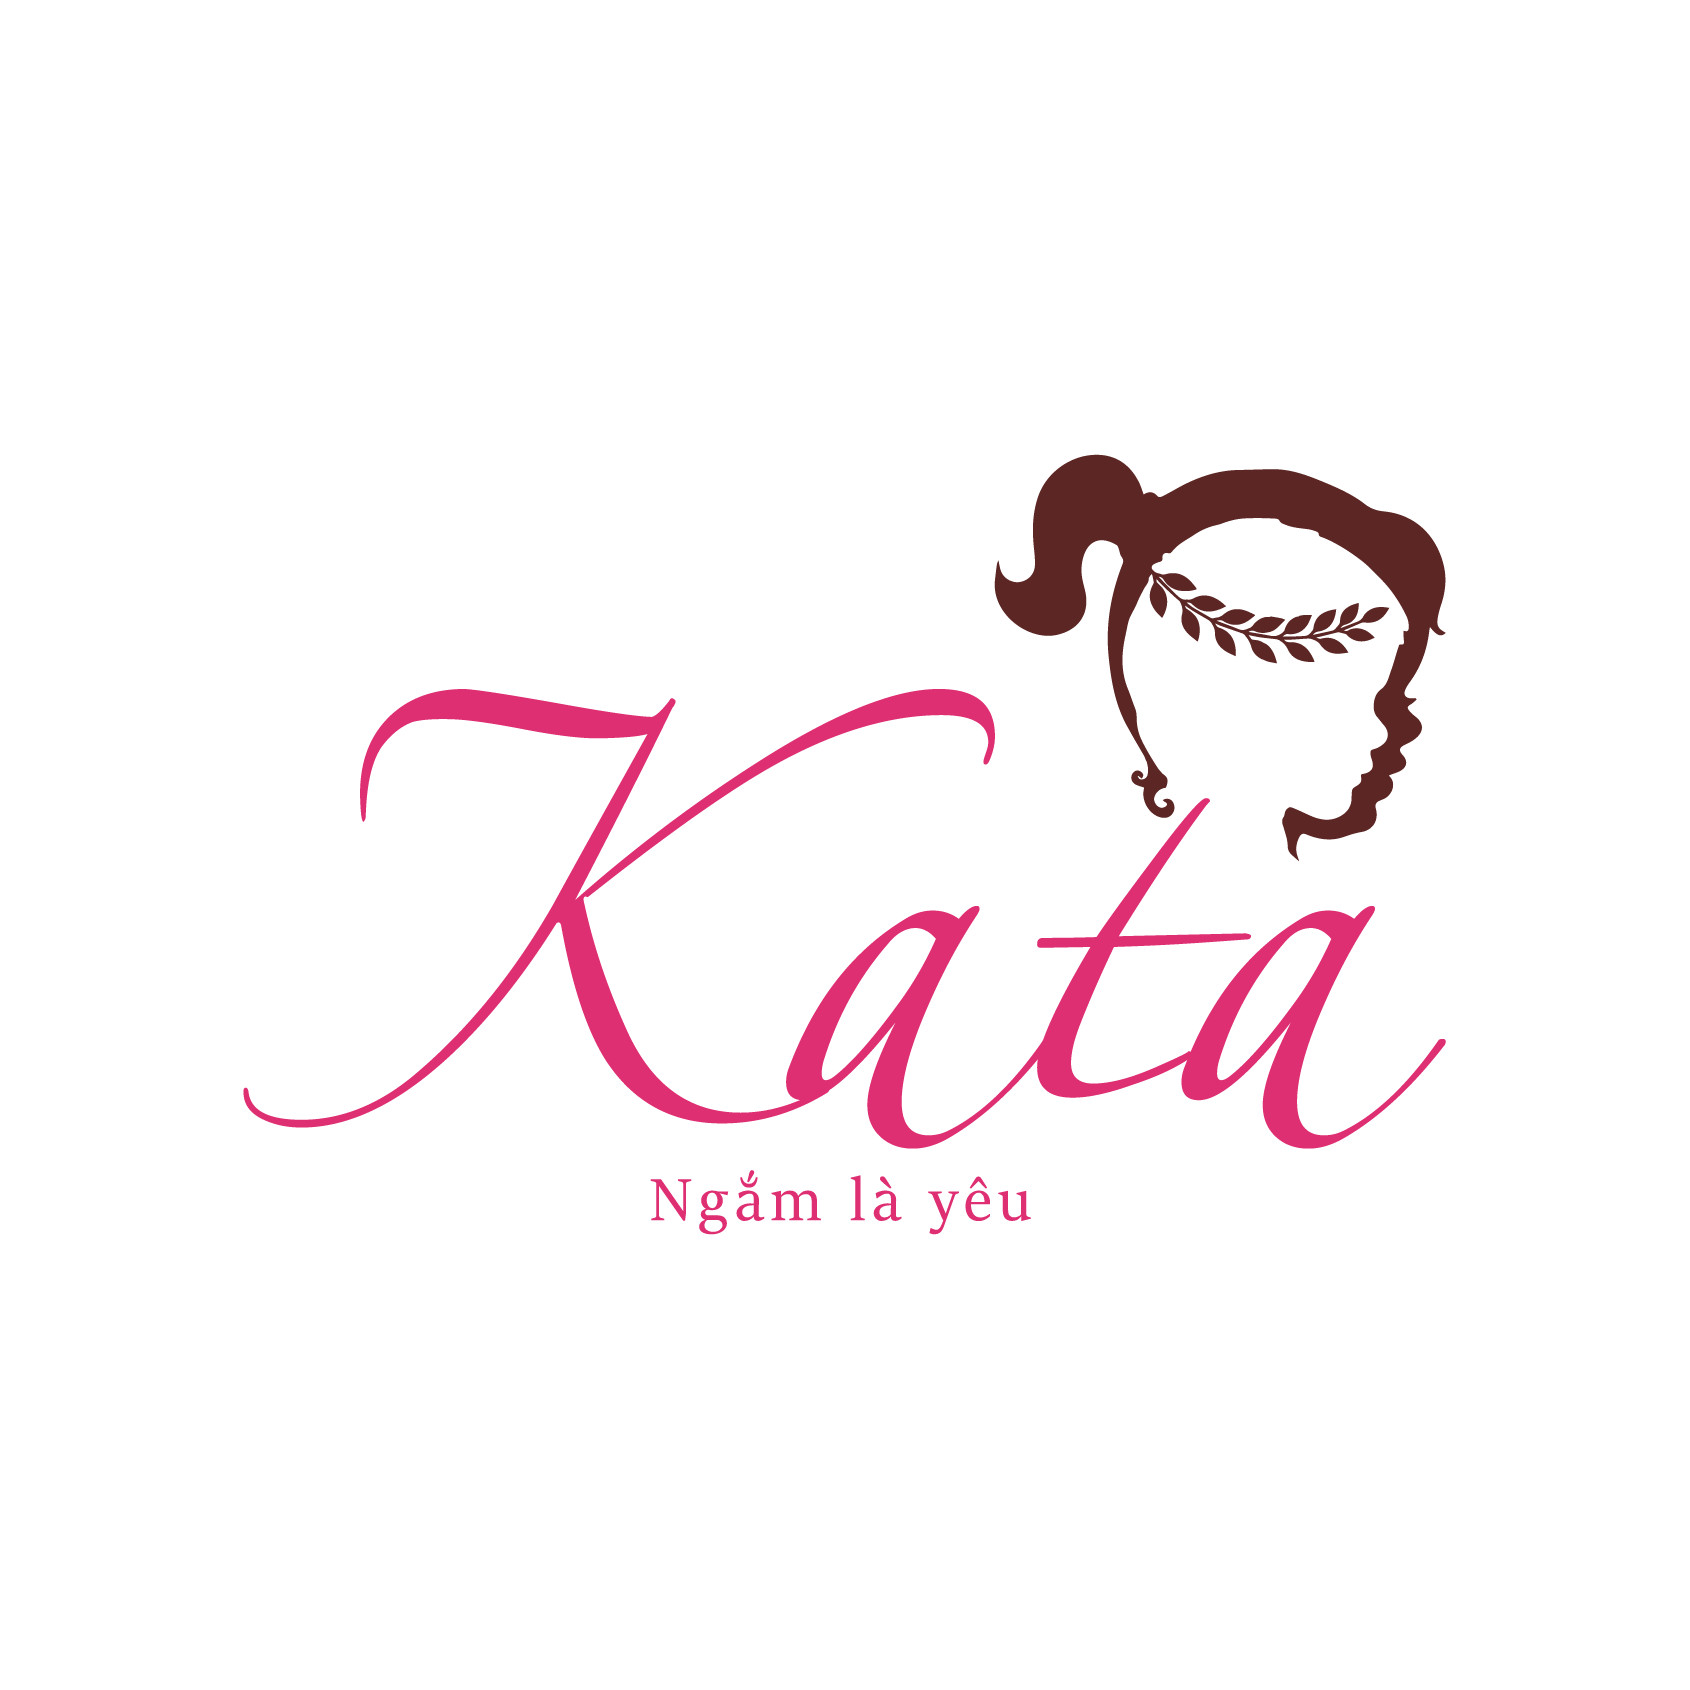 Katalina- Thời trang trẻ em - Thời trang tuổi teen - Thời trang nam nữ - Đồ mẹ bé - Phụ kiện thời trang